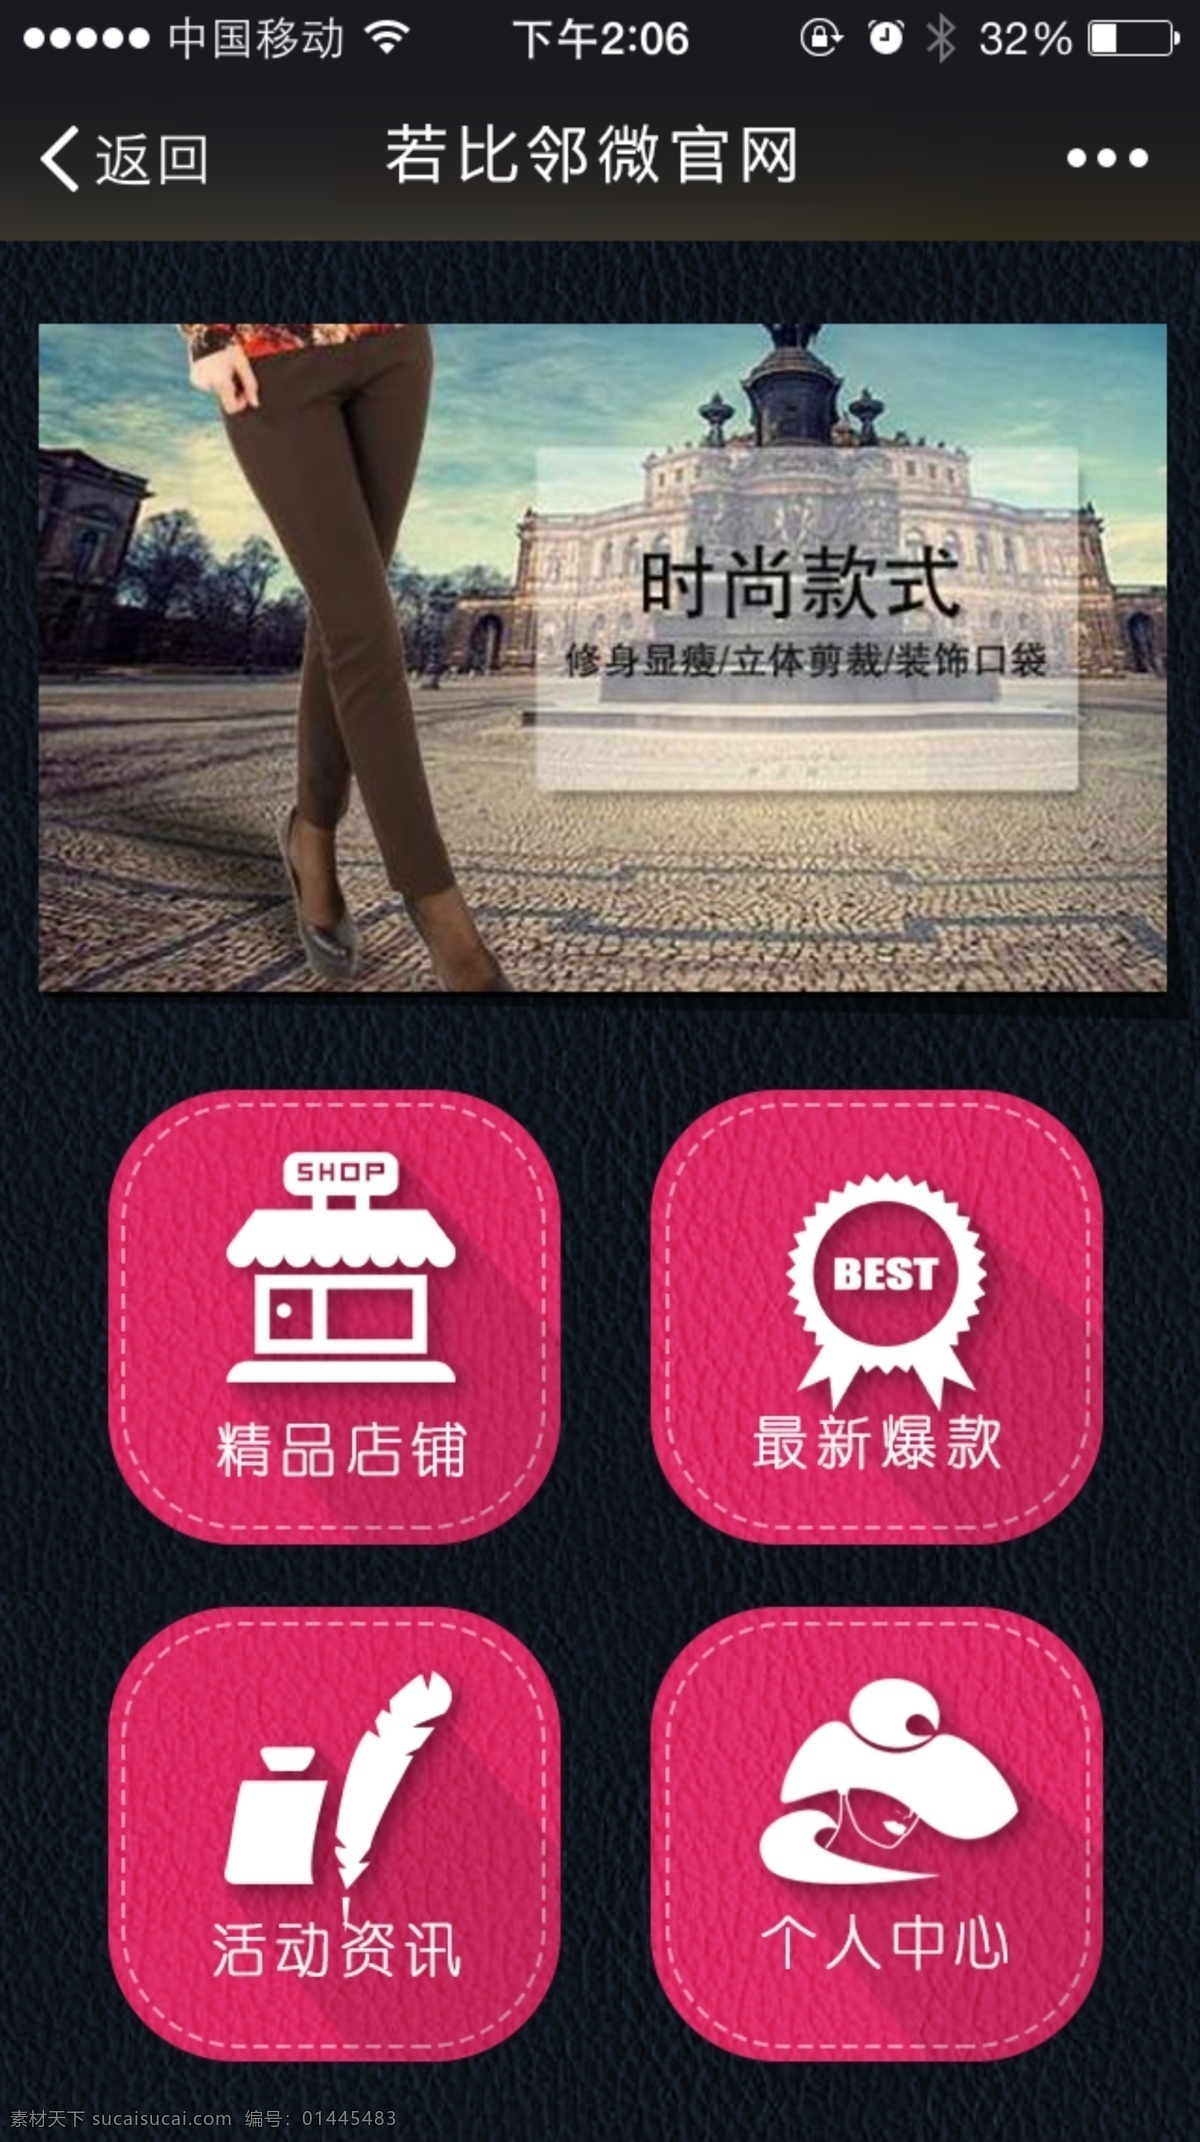 粉色 微 信 官 网 app设计 ui设计 手机app 手机软件界面 手机 社区 app 智能 生活 微信官网 原创设计 其他原创设计